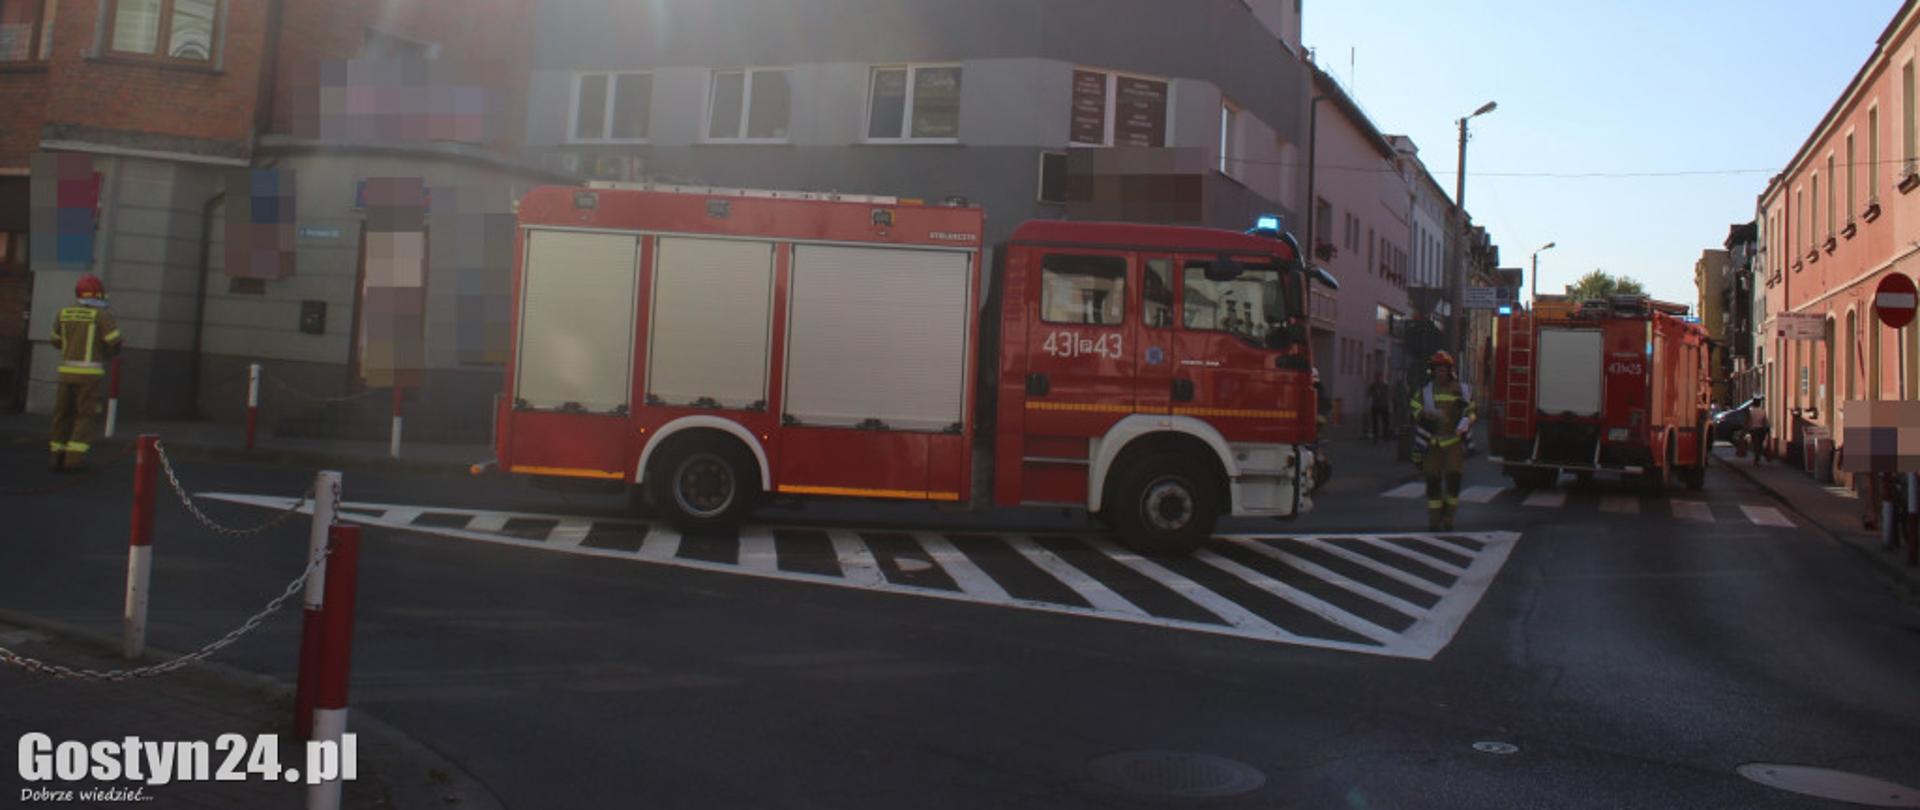 Zdjęcie przedstawia dwa samochody strażackie oraz strażaków stojących na drodze.